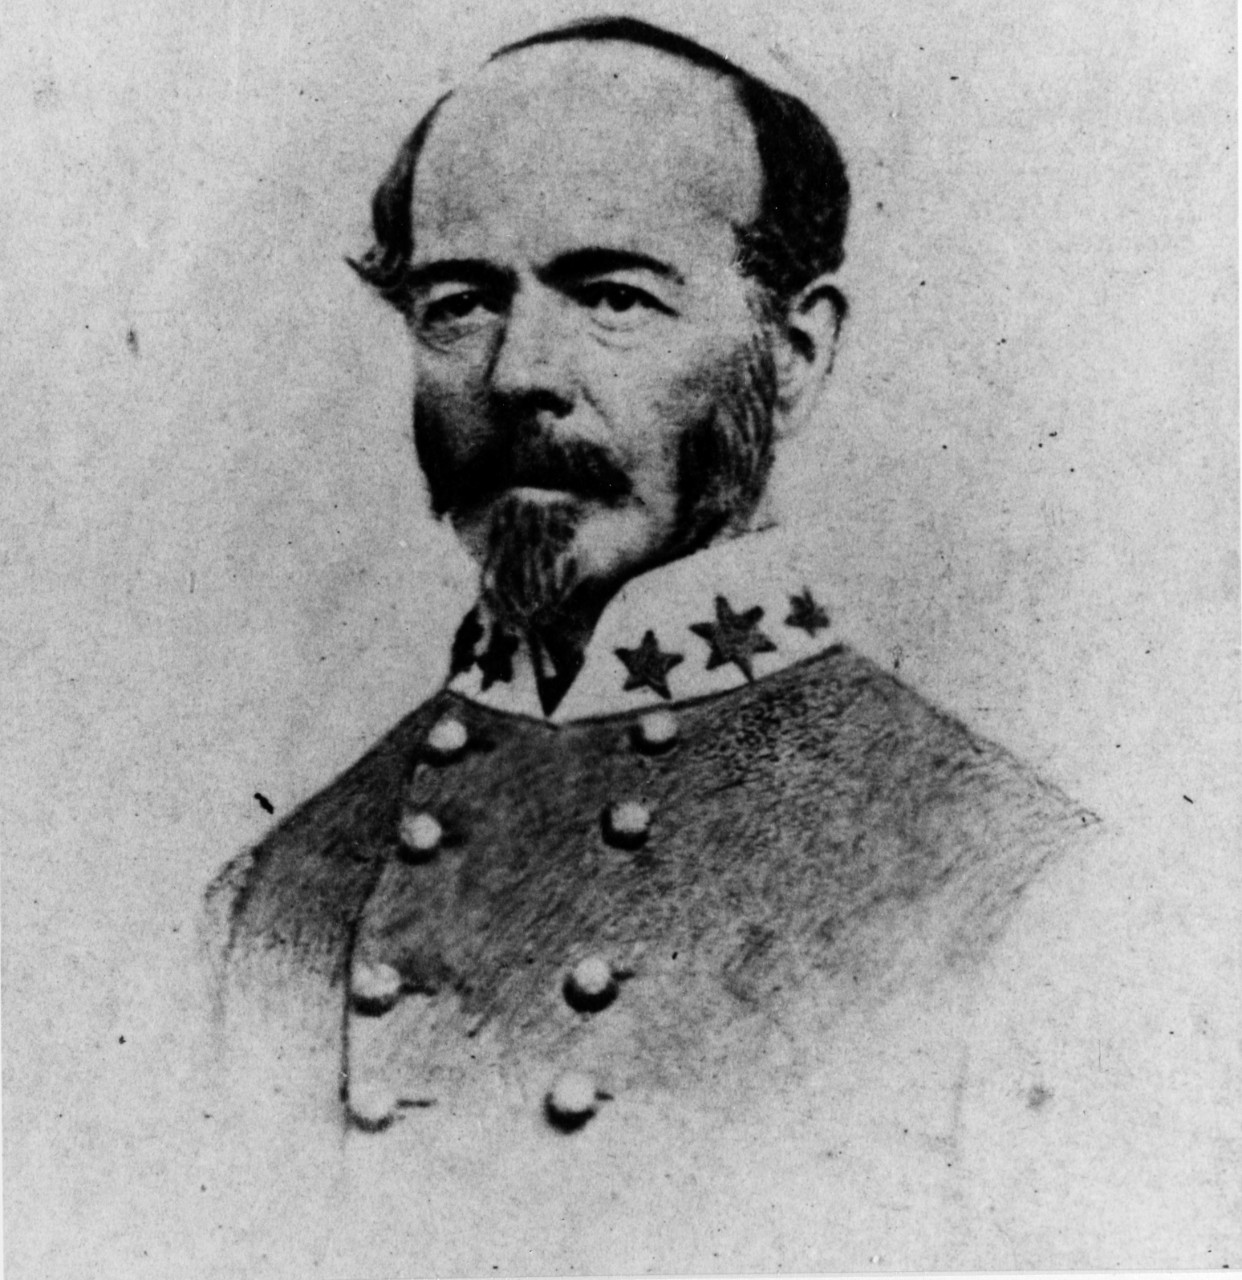 Lieutenant General Joseph E. Johnston, CSA